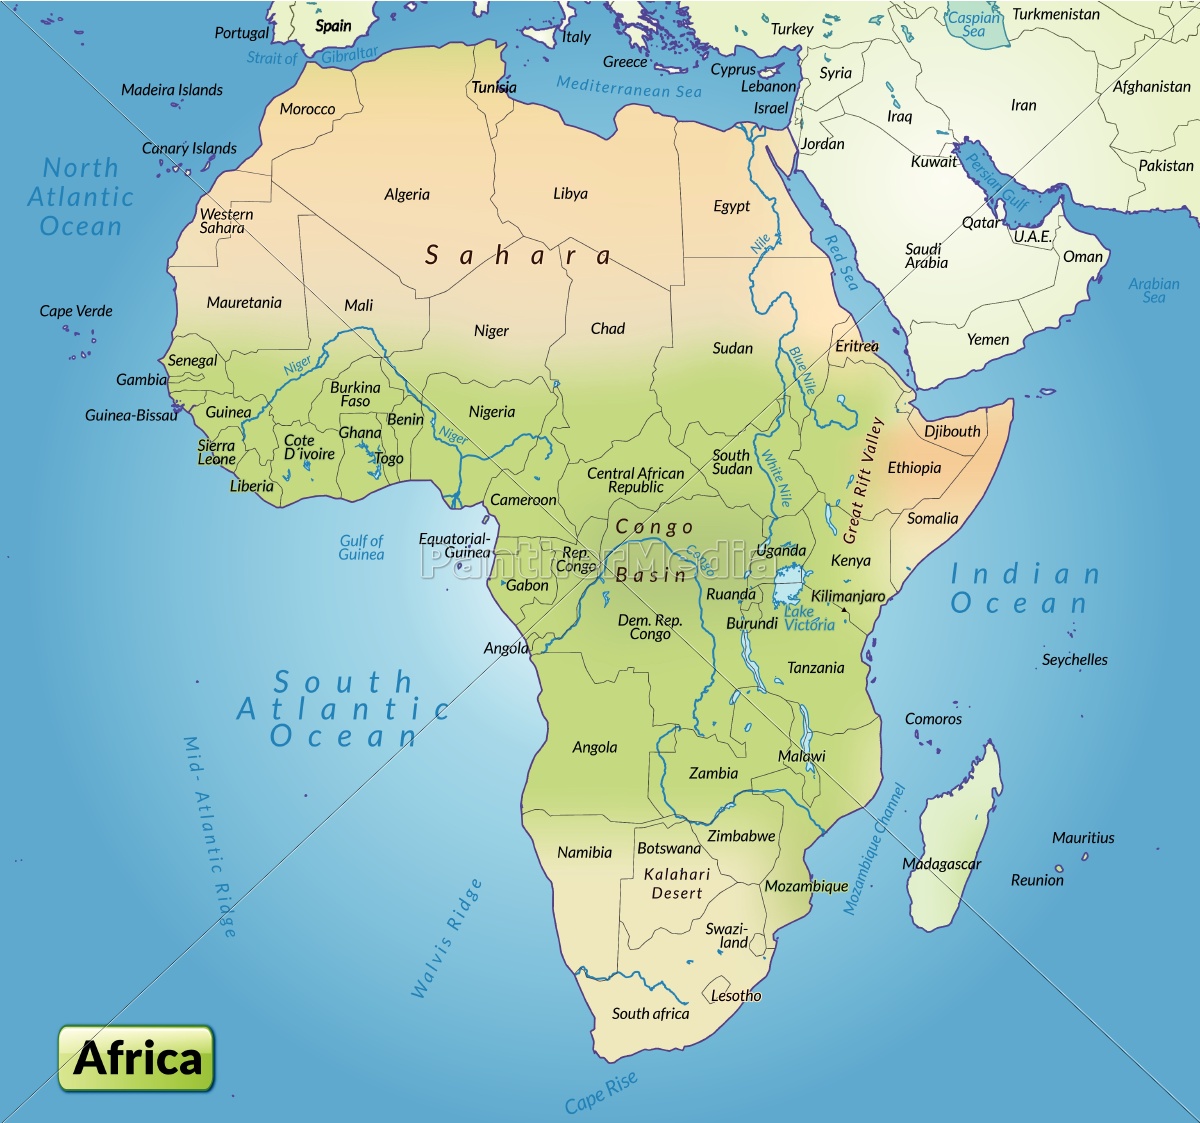 Karte von Afrika als Übersichtskarte - Lizenzfreies Bild - #10655039